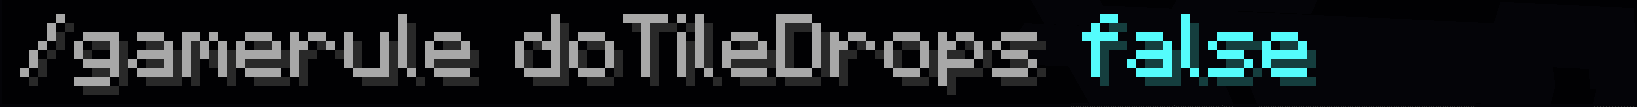 Eccolo. Questo è il comando per disattivare il drop di ogni blocco in Minecraft. Un semplice Gamerule.